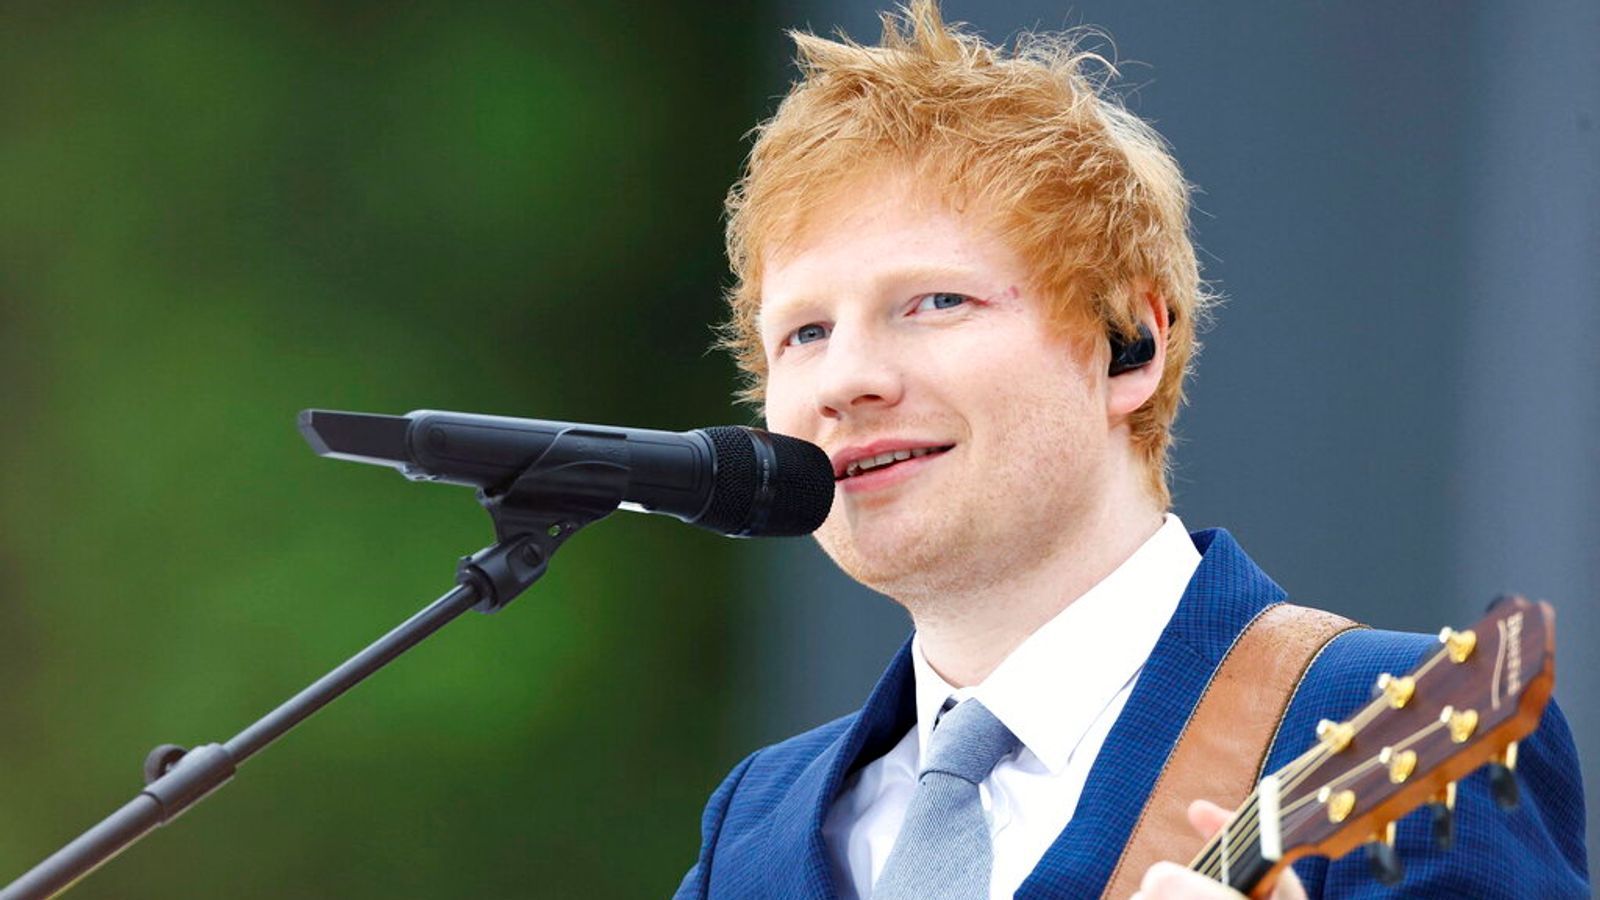 Ed Sheeran plagiarism case: Singer denies copying Marvin Gaye's classic